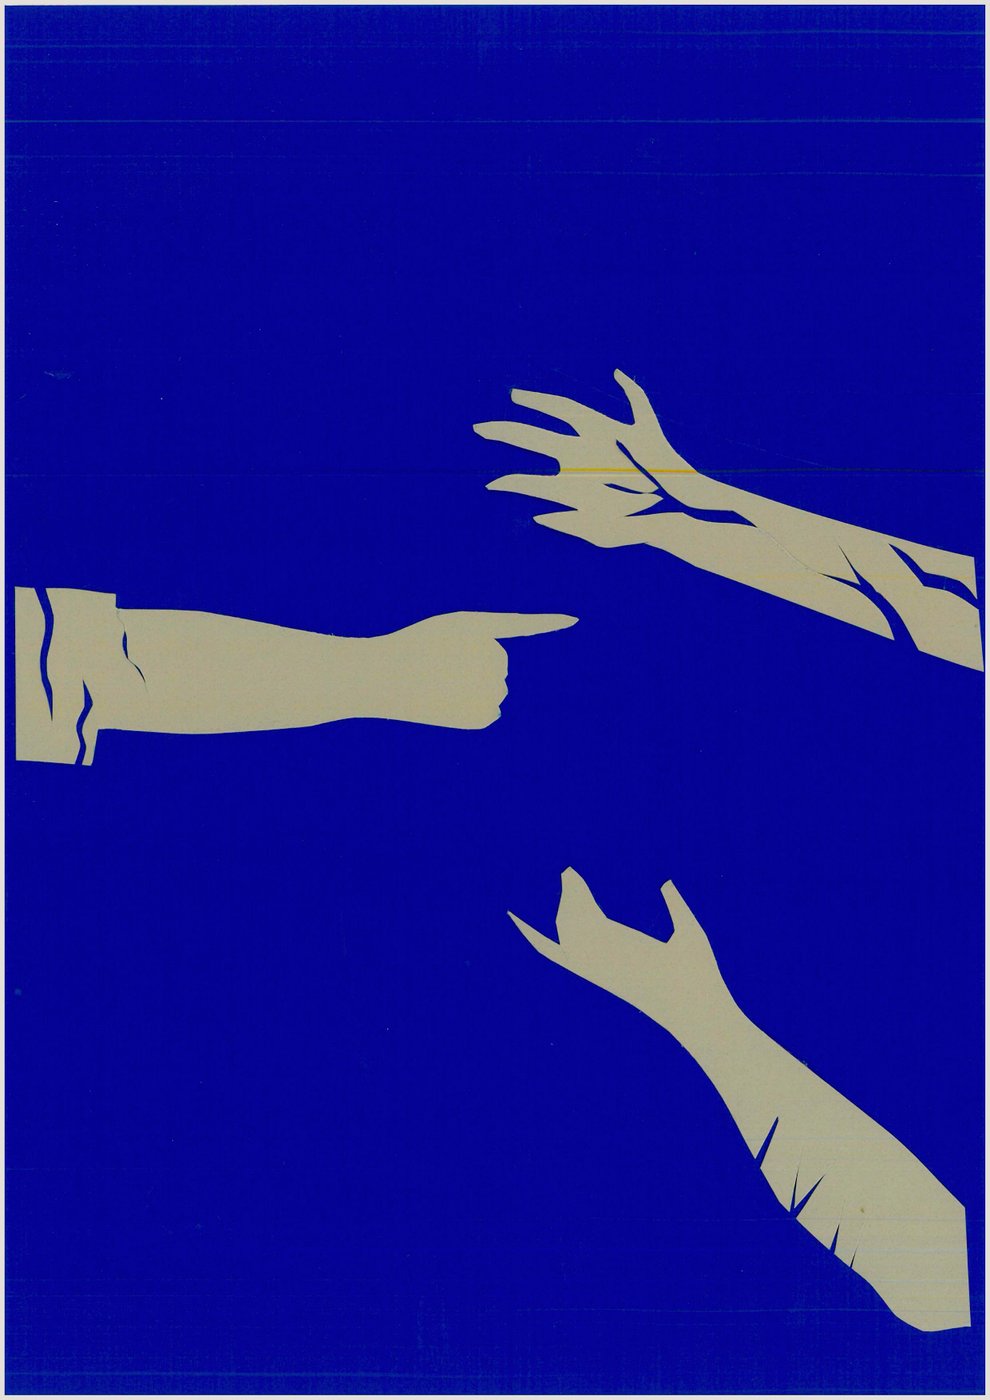 Drei schematische Hände vor blauem Hintergrund